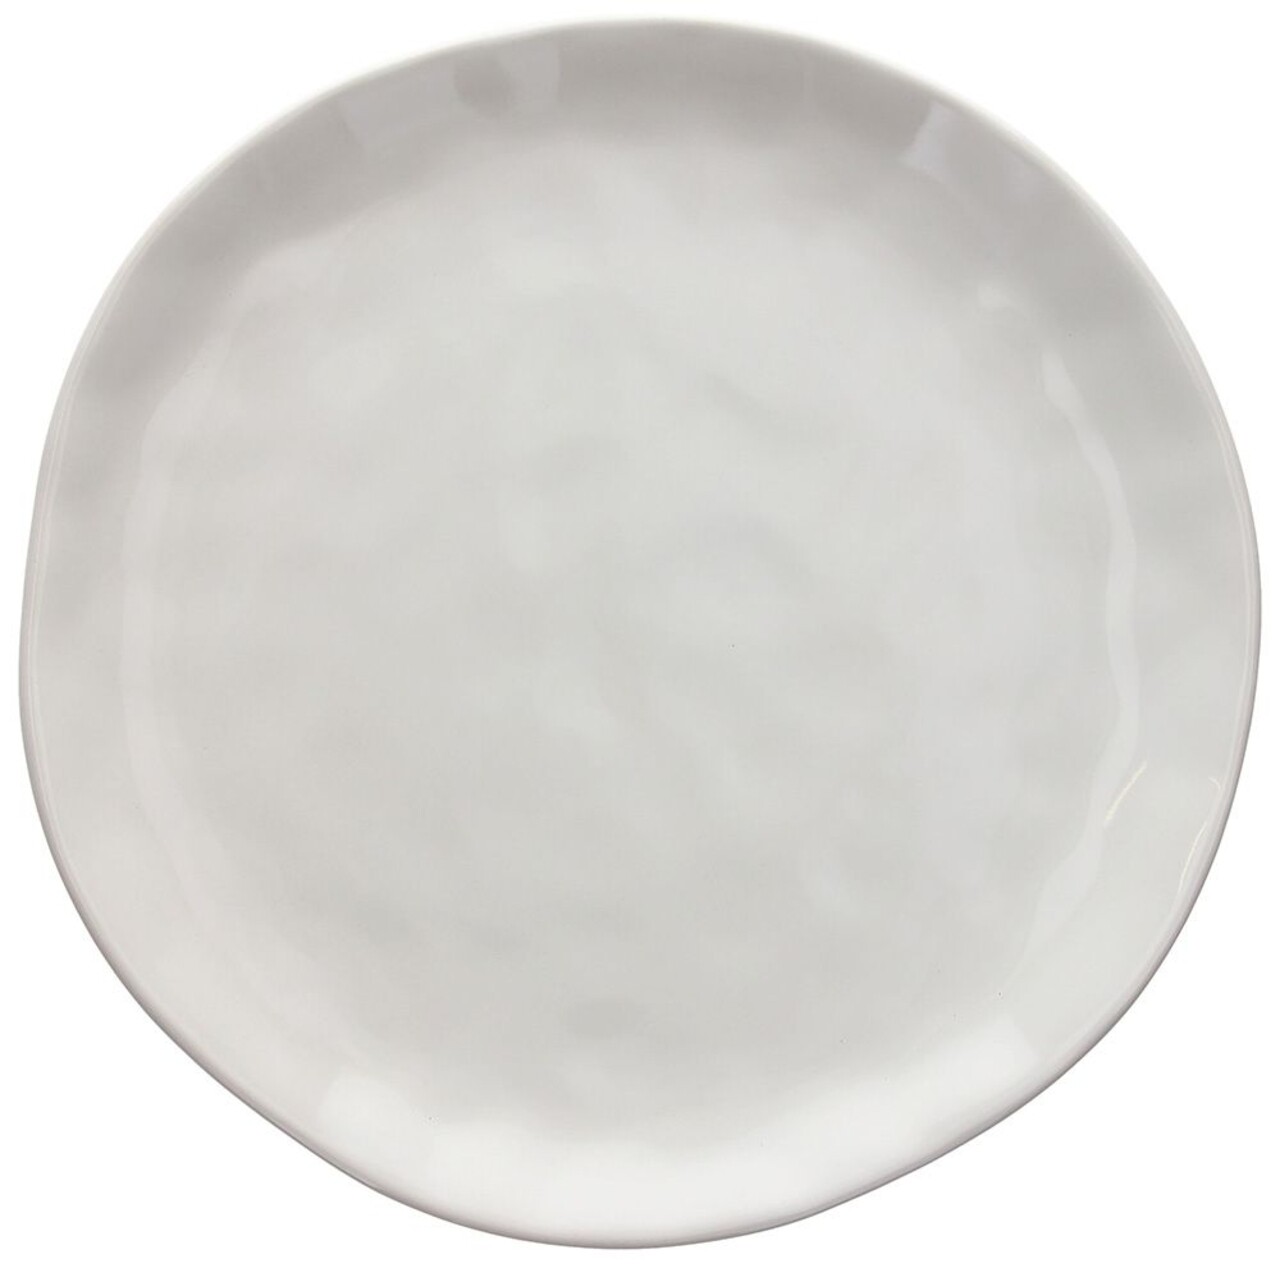 Stretch lemez, Tognana, Nordik White, 26 cm Ø, kerámia, fehér